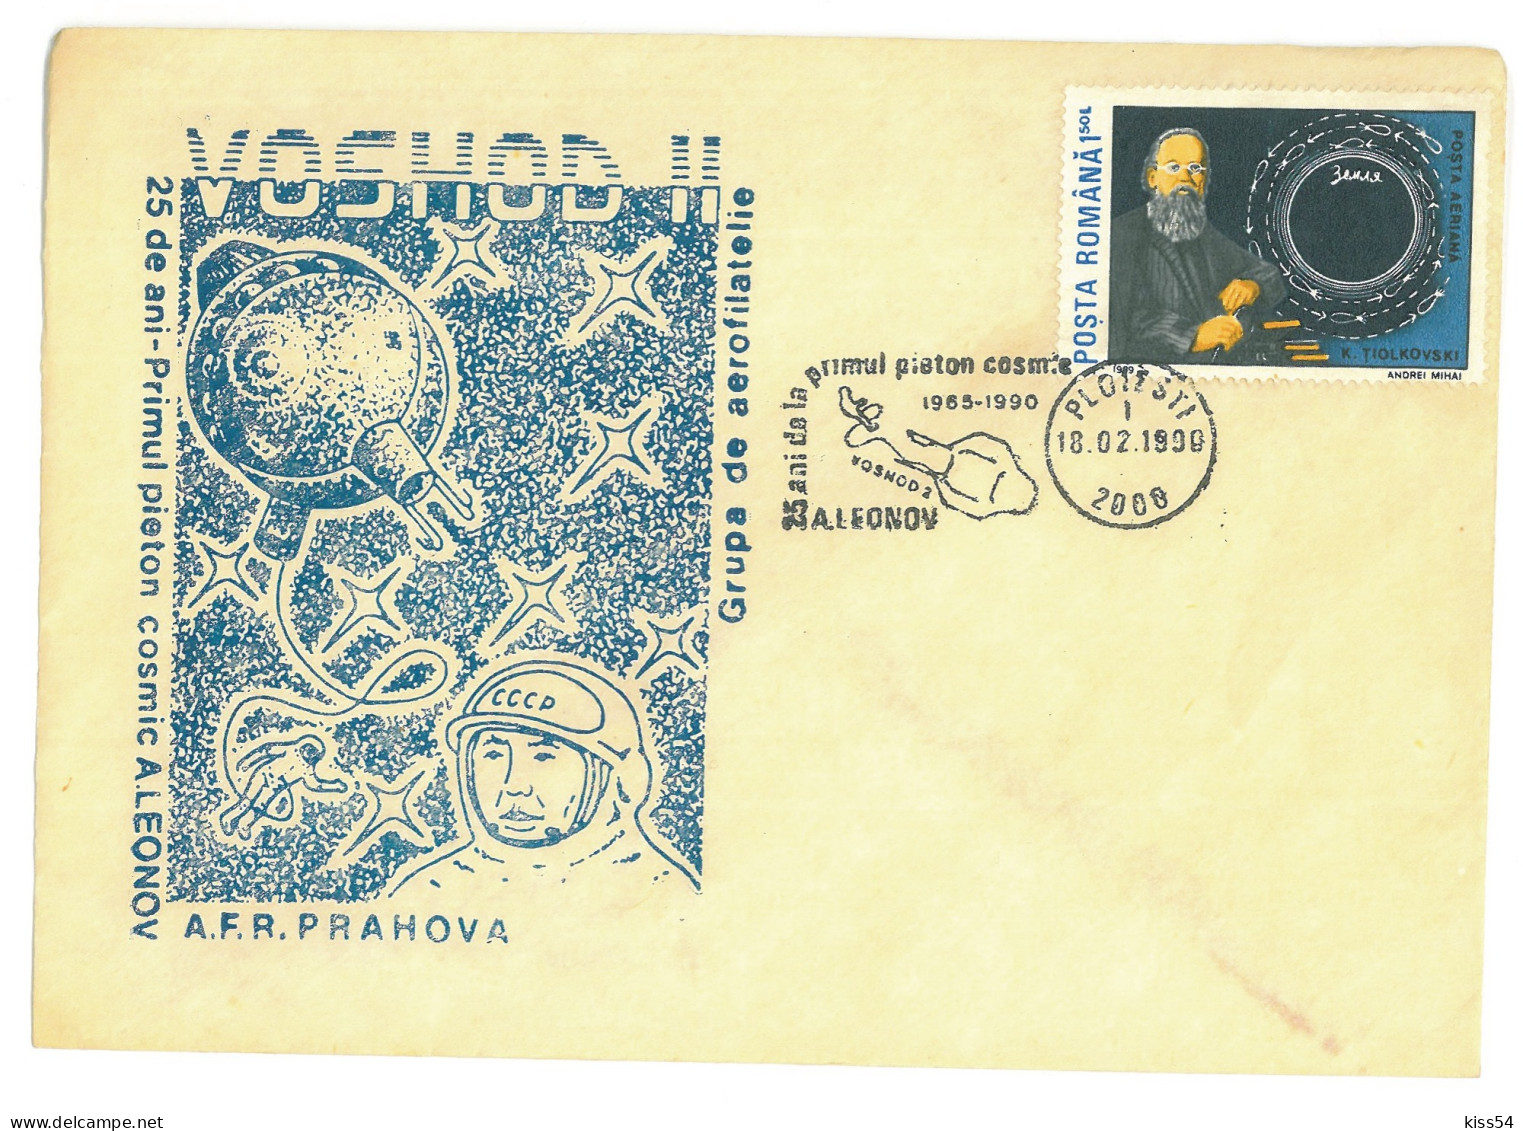 COV 97 - 3069 Ploiesti, Cosmos, VOSHOD II, Romania - Cover Stationery - Used - 1990 - Cartoline Maximum